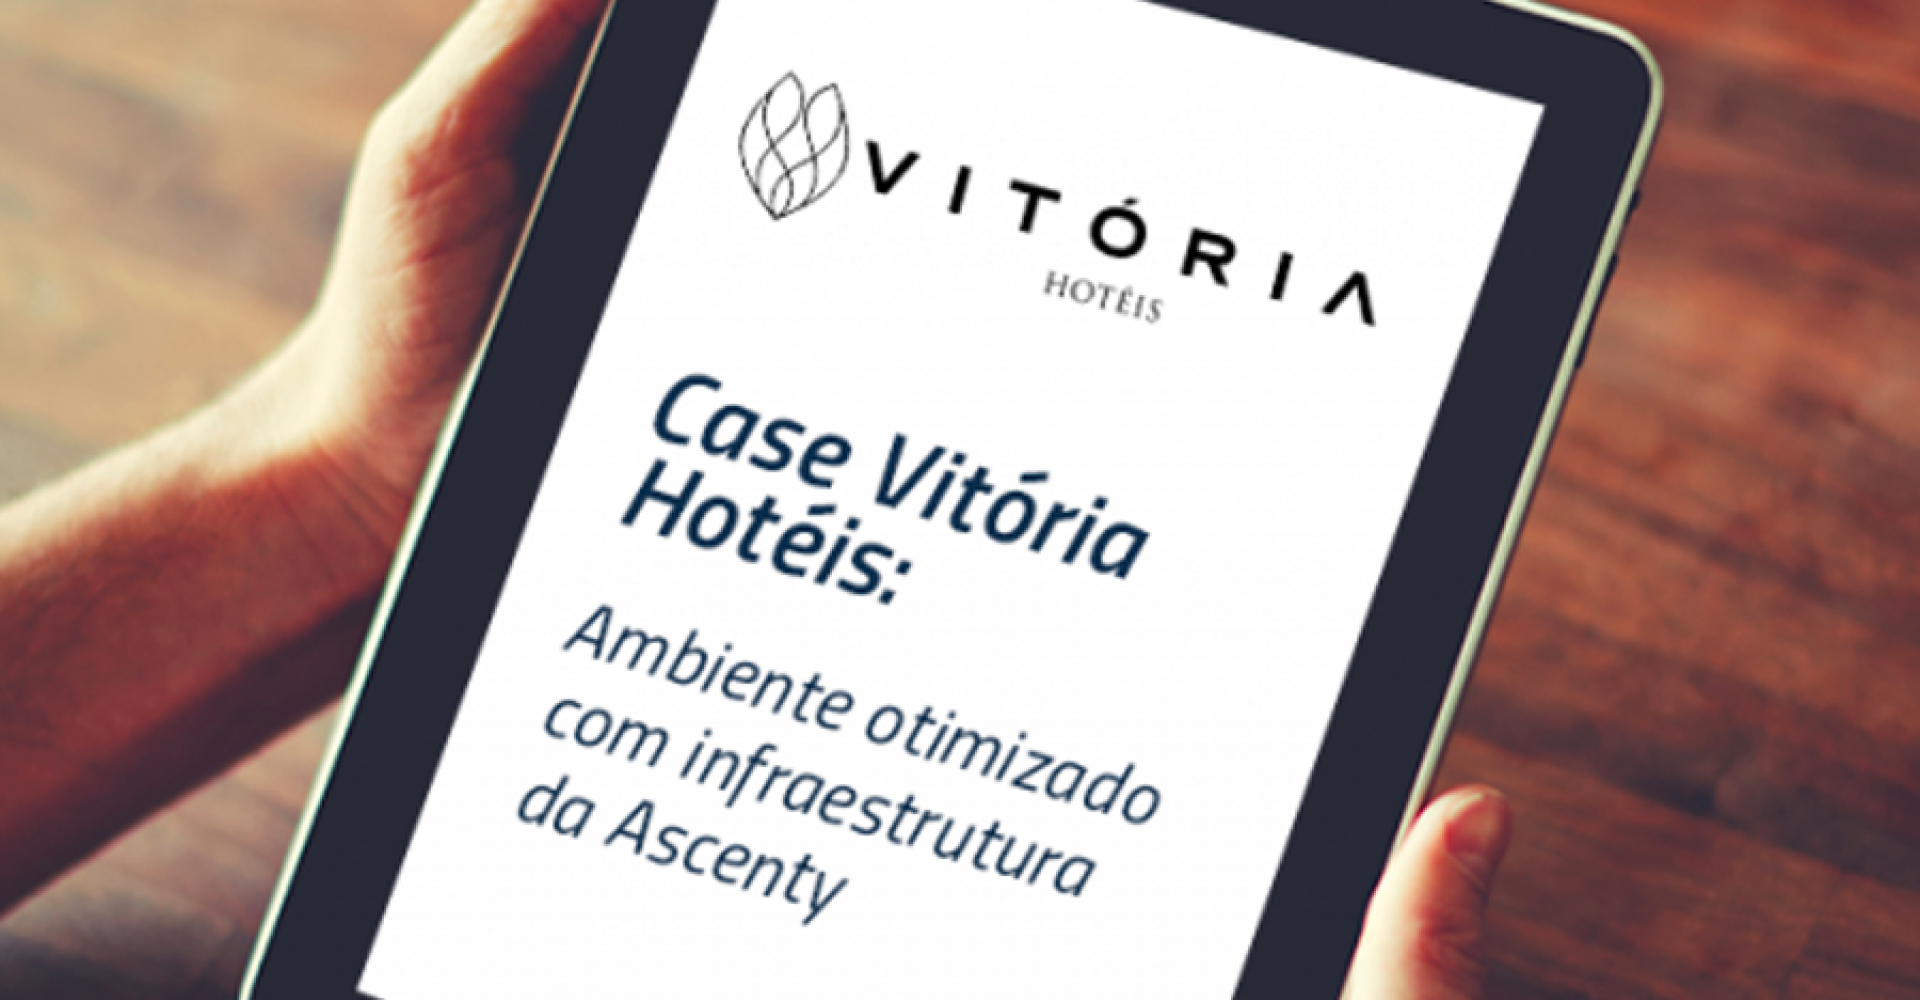 Vitória Hotéis otimiza ambiente de TI com infraestrutura da Ascenty